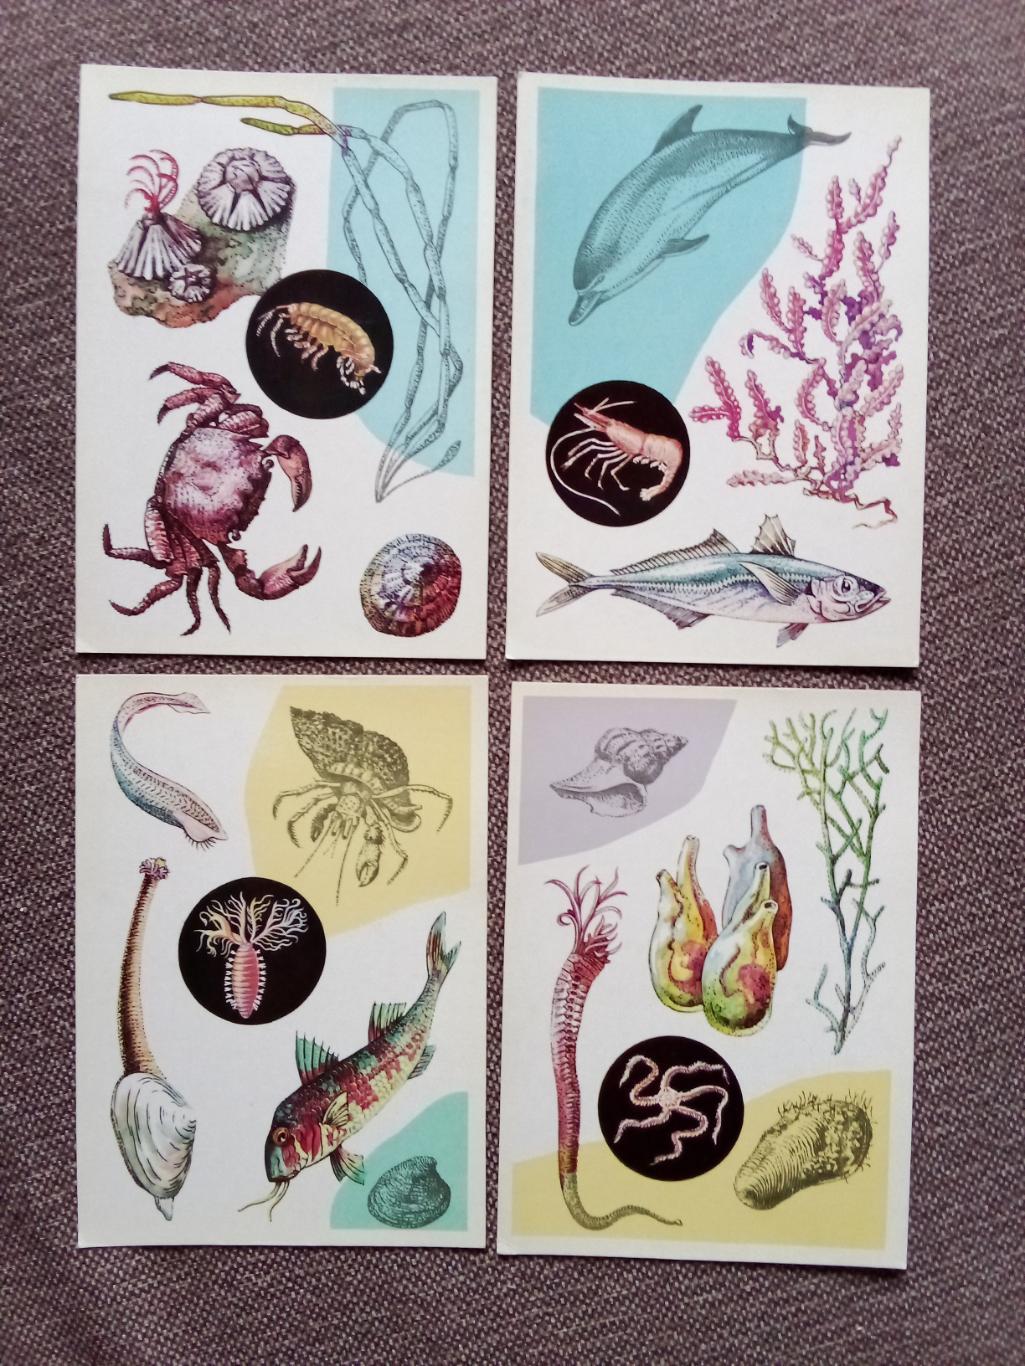 Морской животный мир : У моря 1979 г. полный набор - 16 открыток (Фауна животные 3